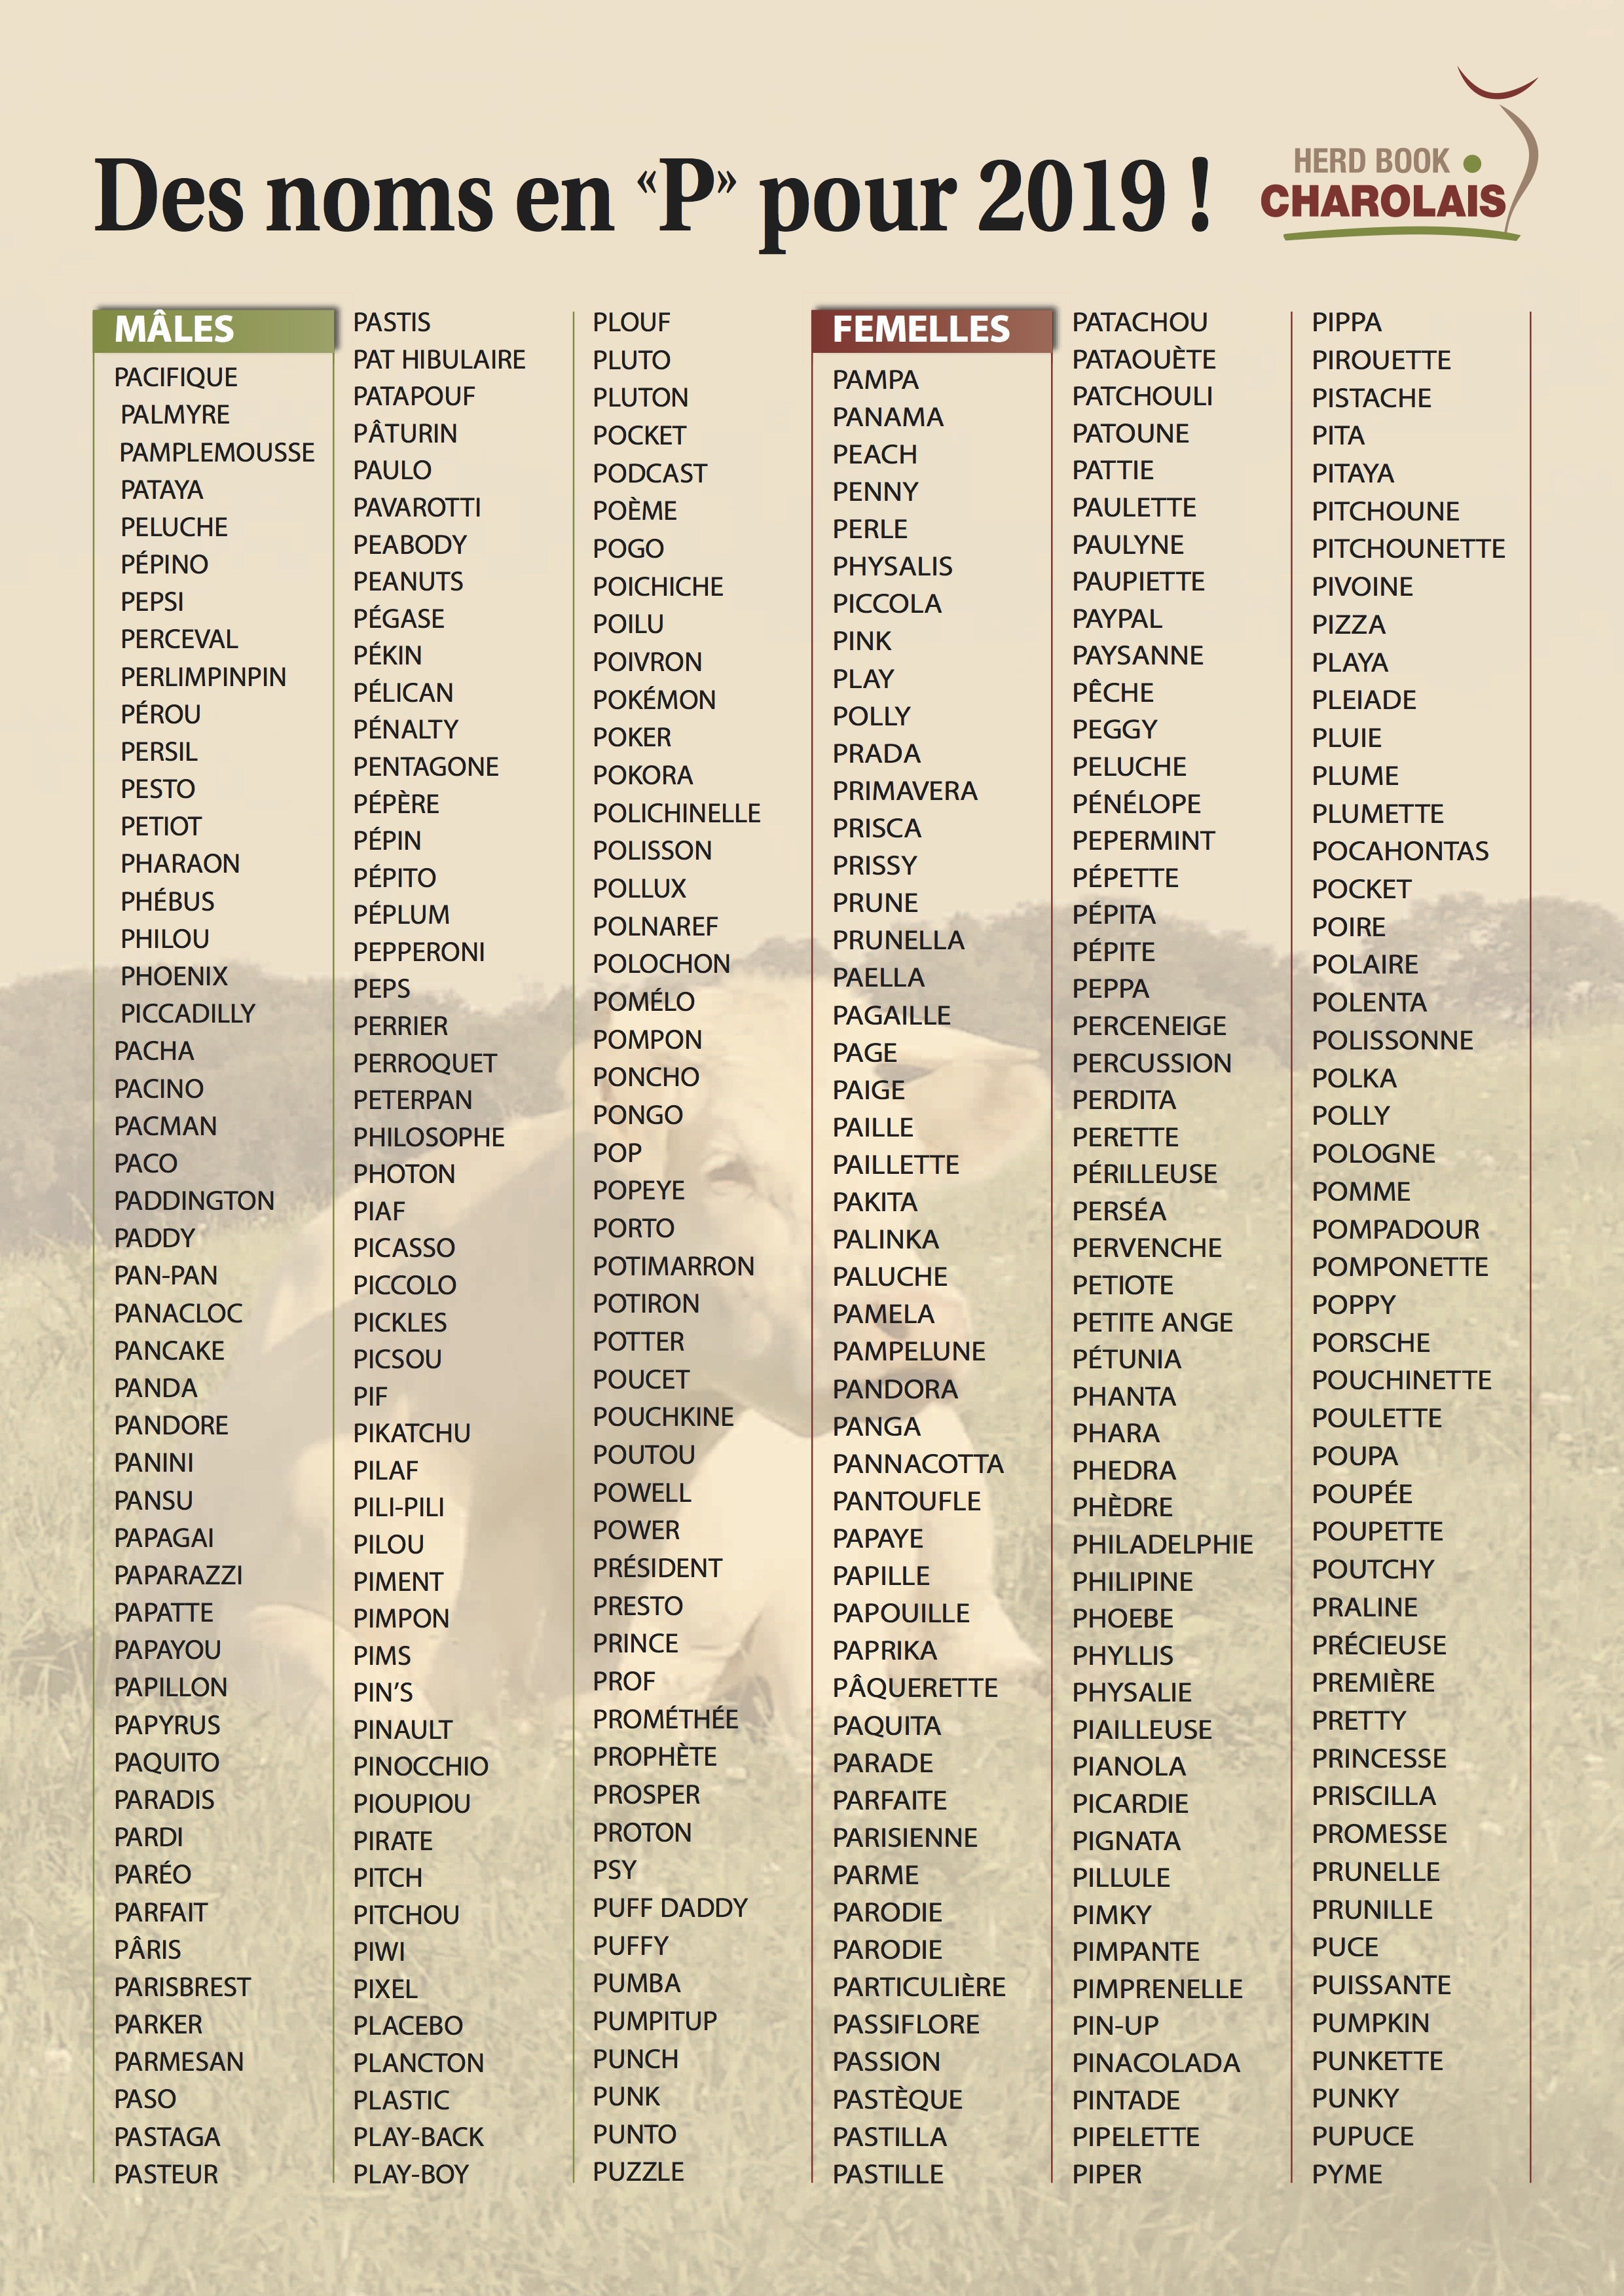 Liste Des Noms En P Herd Book Charolais